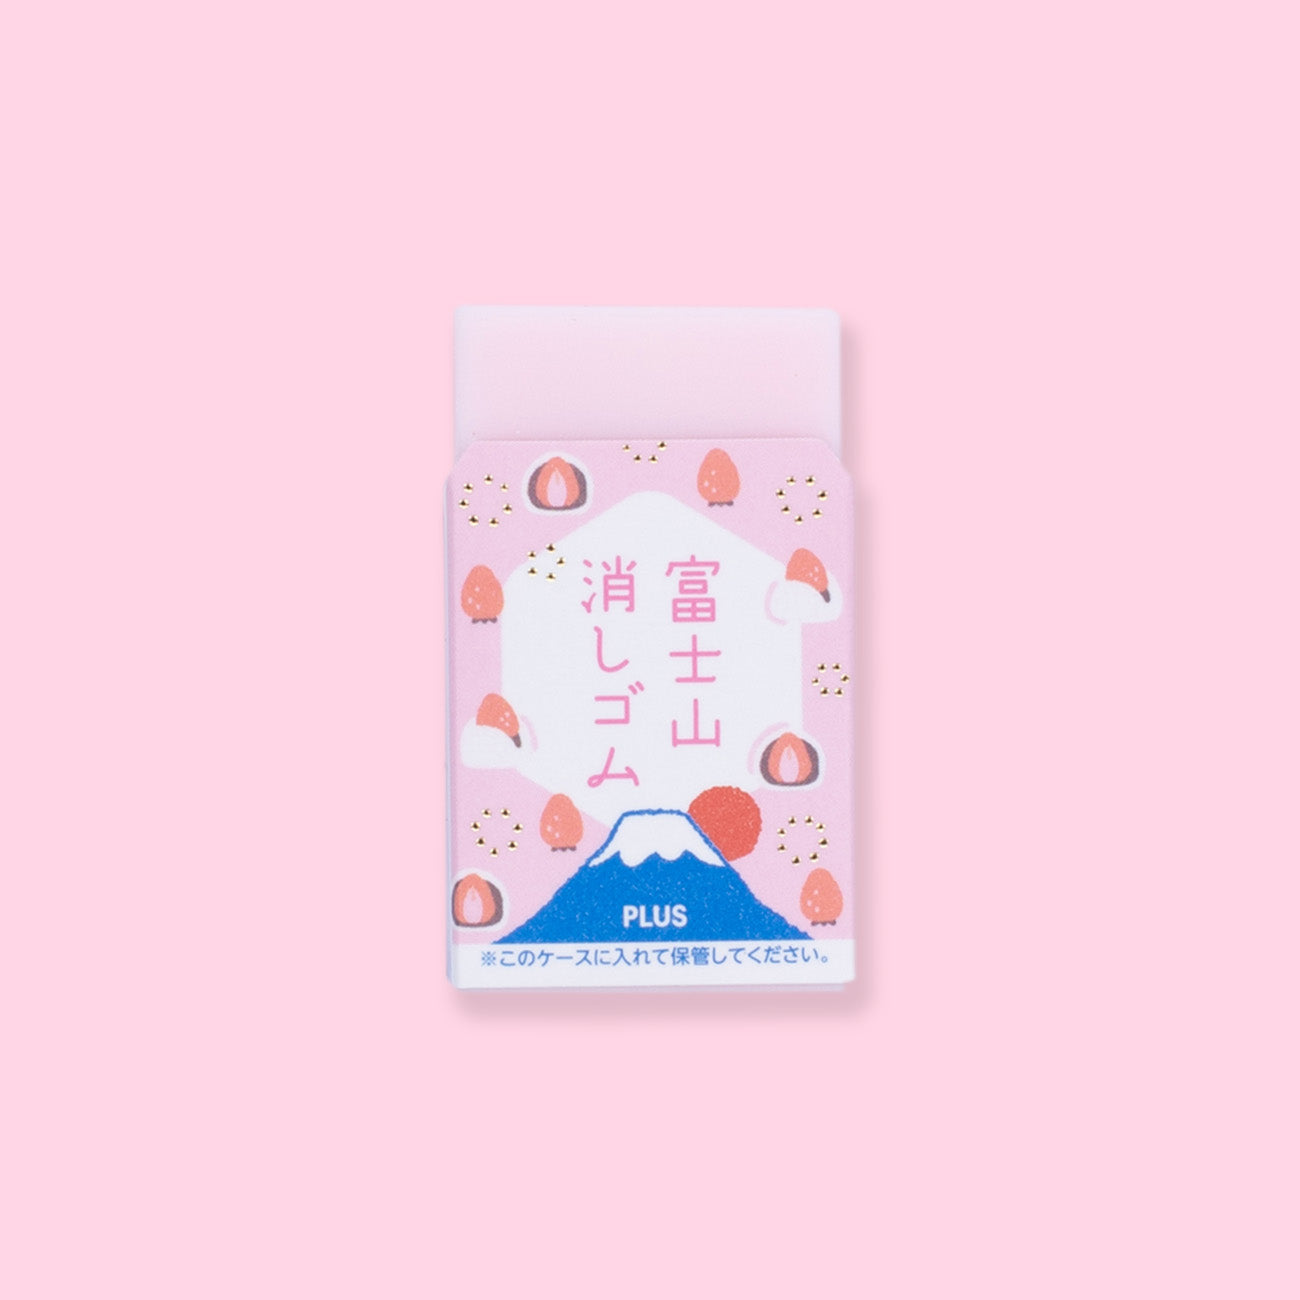 Plus Air-In Mount Fuji Eraser - Spring Edition - Pink